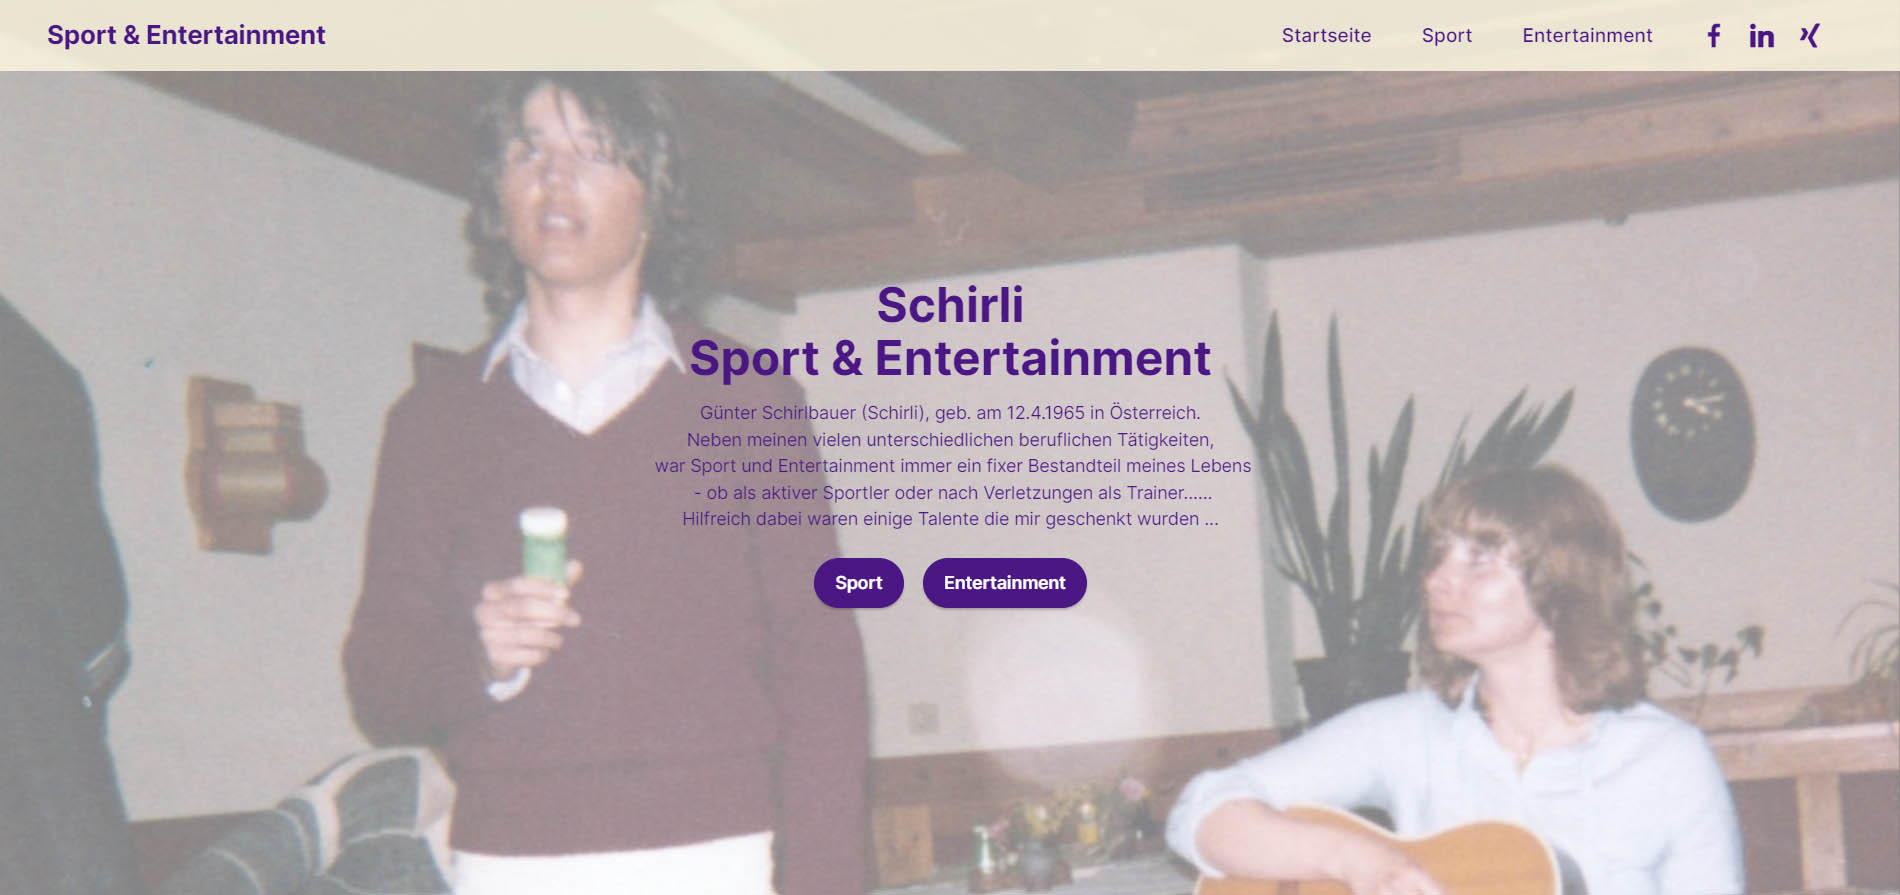 Sport & Entertainment, Sport und Entertainment, Sport Entertainment, Sport, Entertainment, Schirli, Schirlbauer